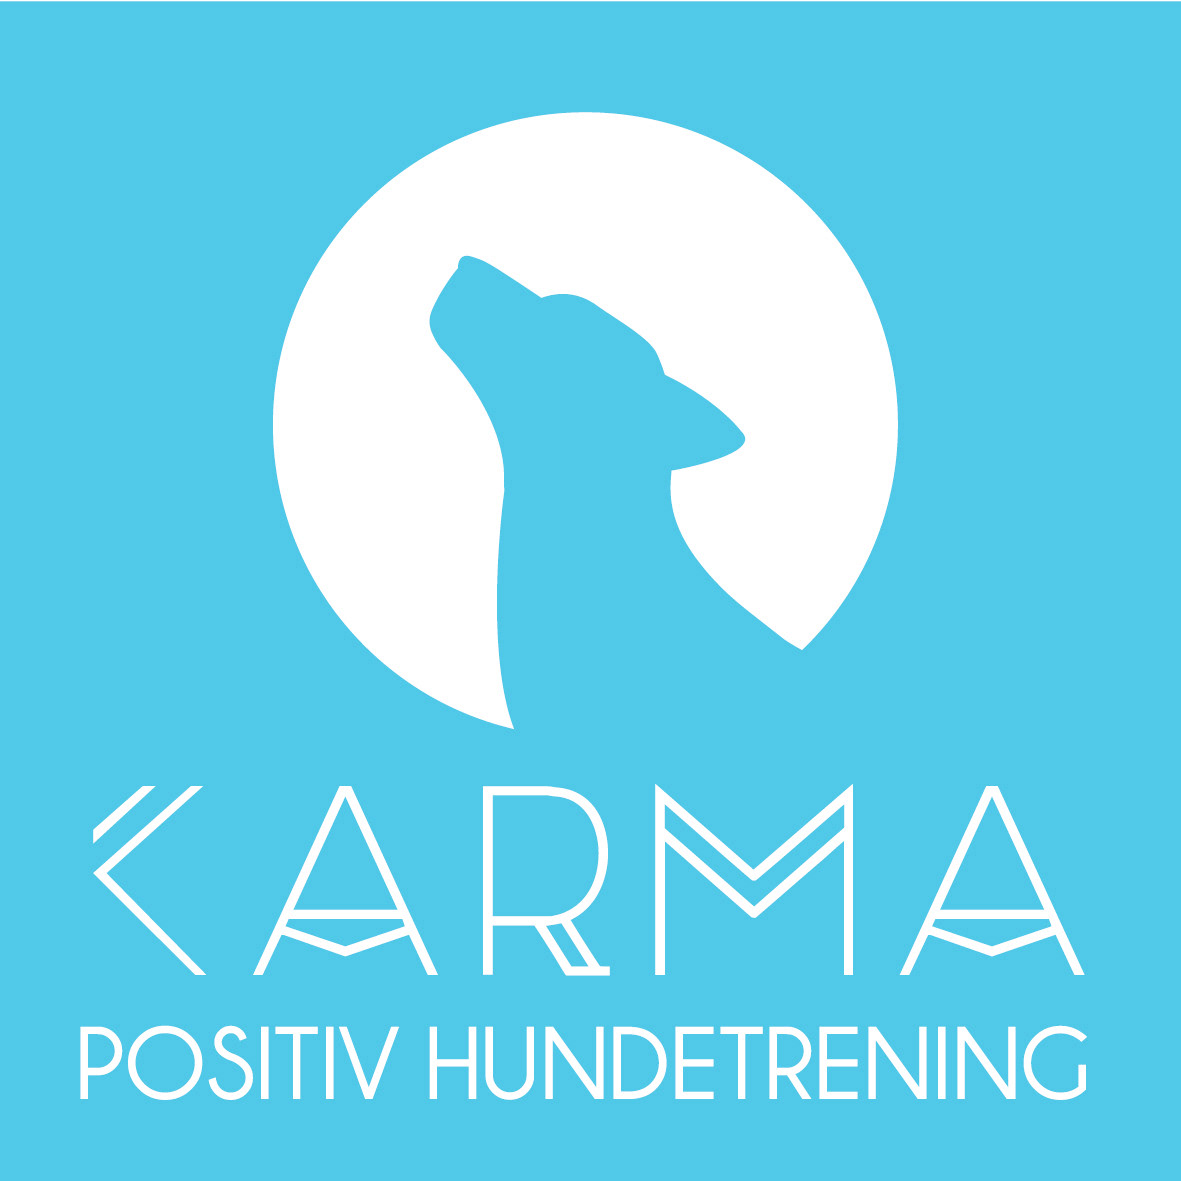 Karma Positiv Hundetrening logo Positive dog training dog karma